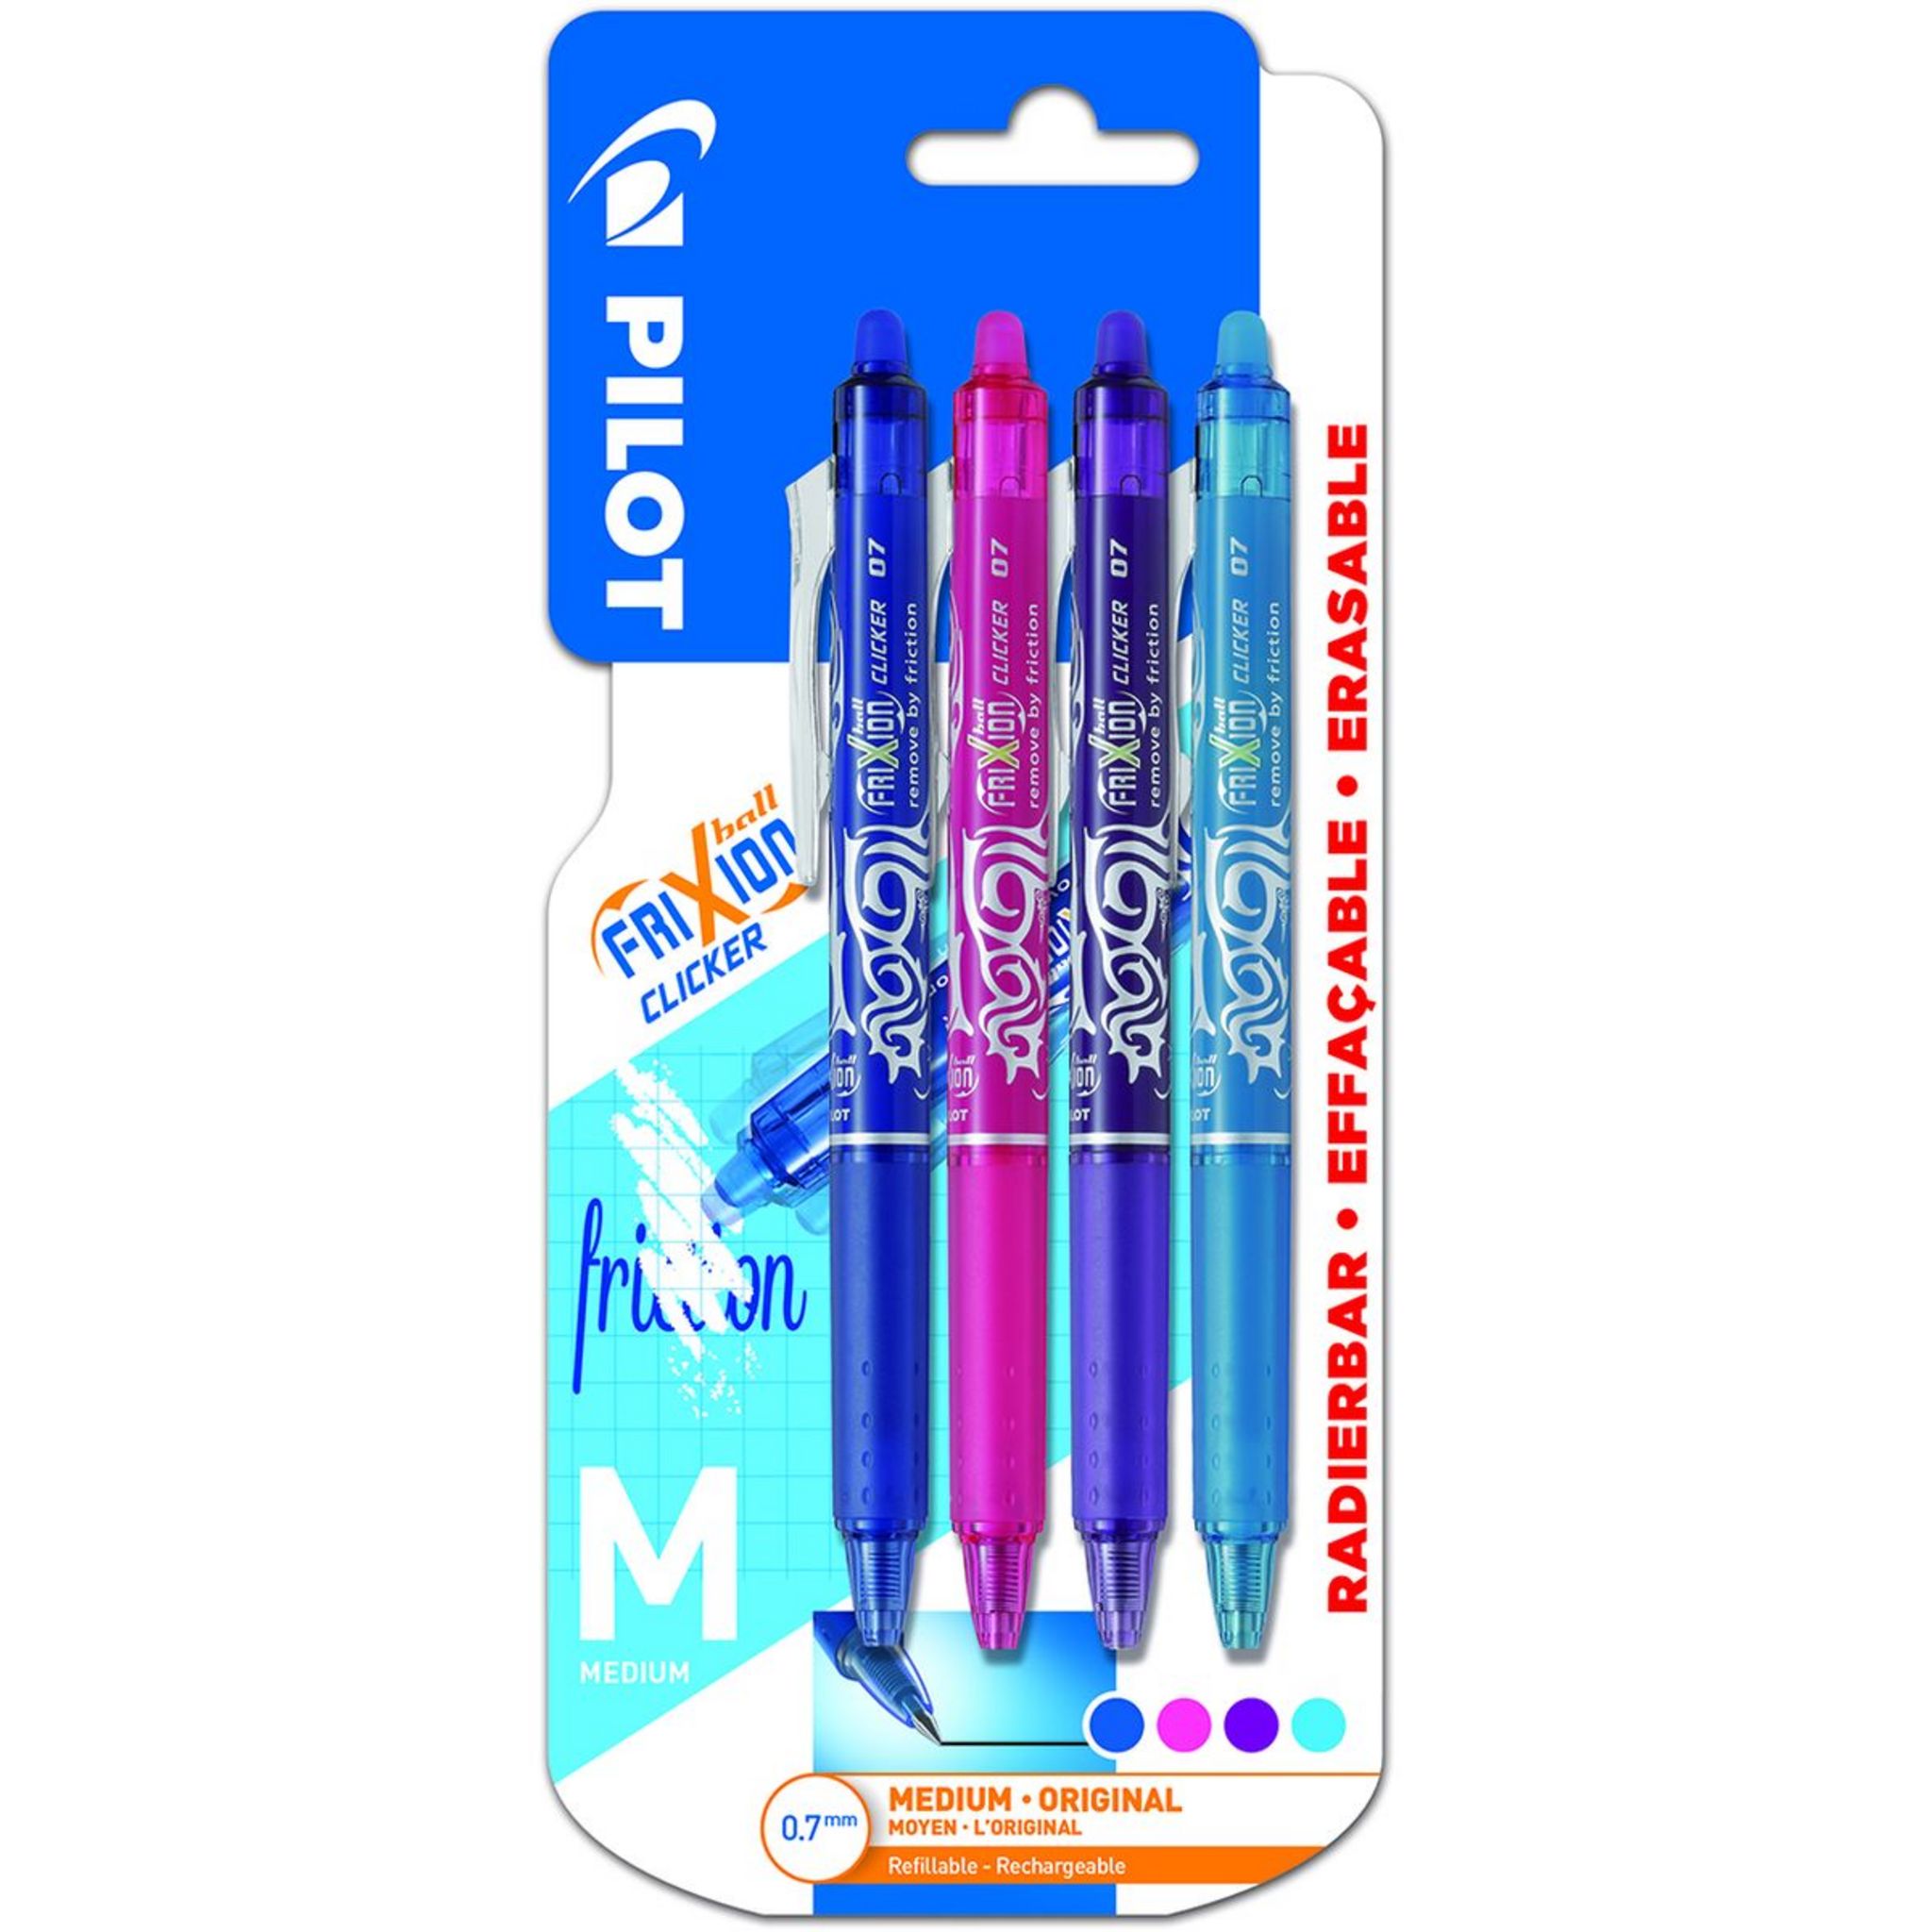 PILOT Lot de 7 stylos effaçables pointe moyenne  noir/bleu/rouge/vert/rose/violet/bleu clair FriXion Ball Clicker + 1 To Do  list pas cher 